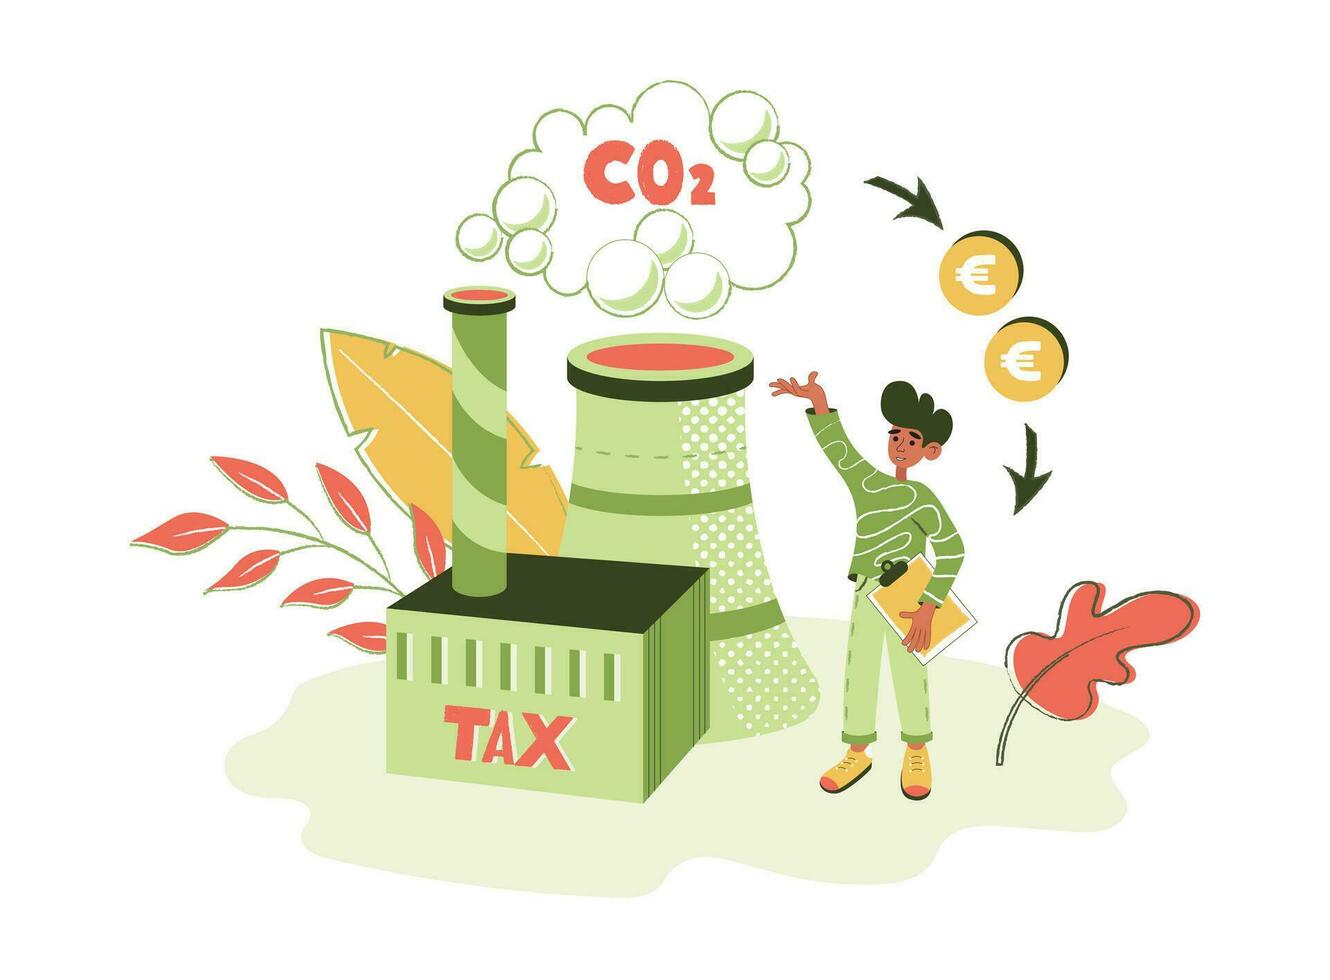 tekens tonen manieren naar verminderen co2 emissie gevolg door koolstof beheer en belastingen. duurzaamheid illustratie set. laag koolstof en milieu verantwoordelijkheid concept. vector